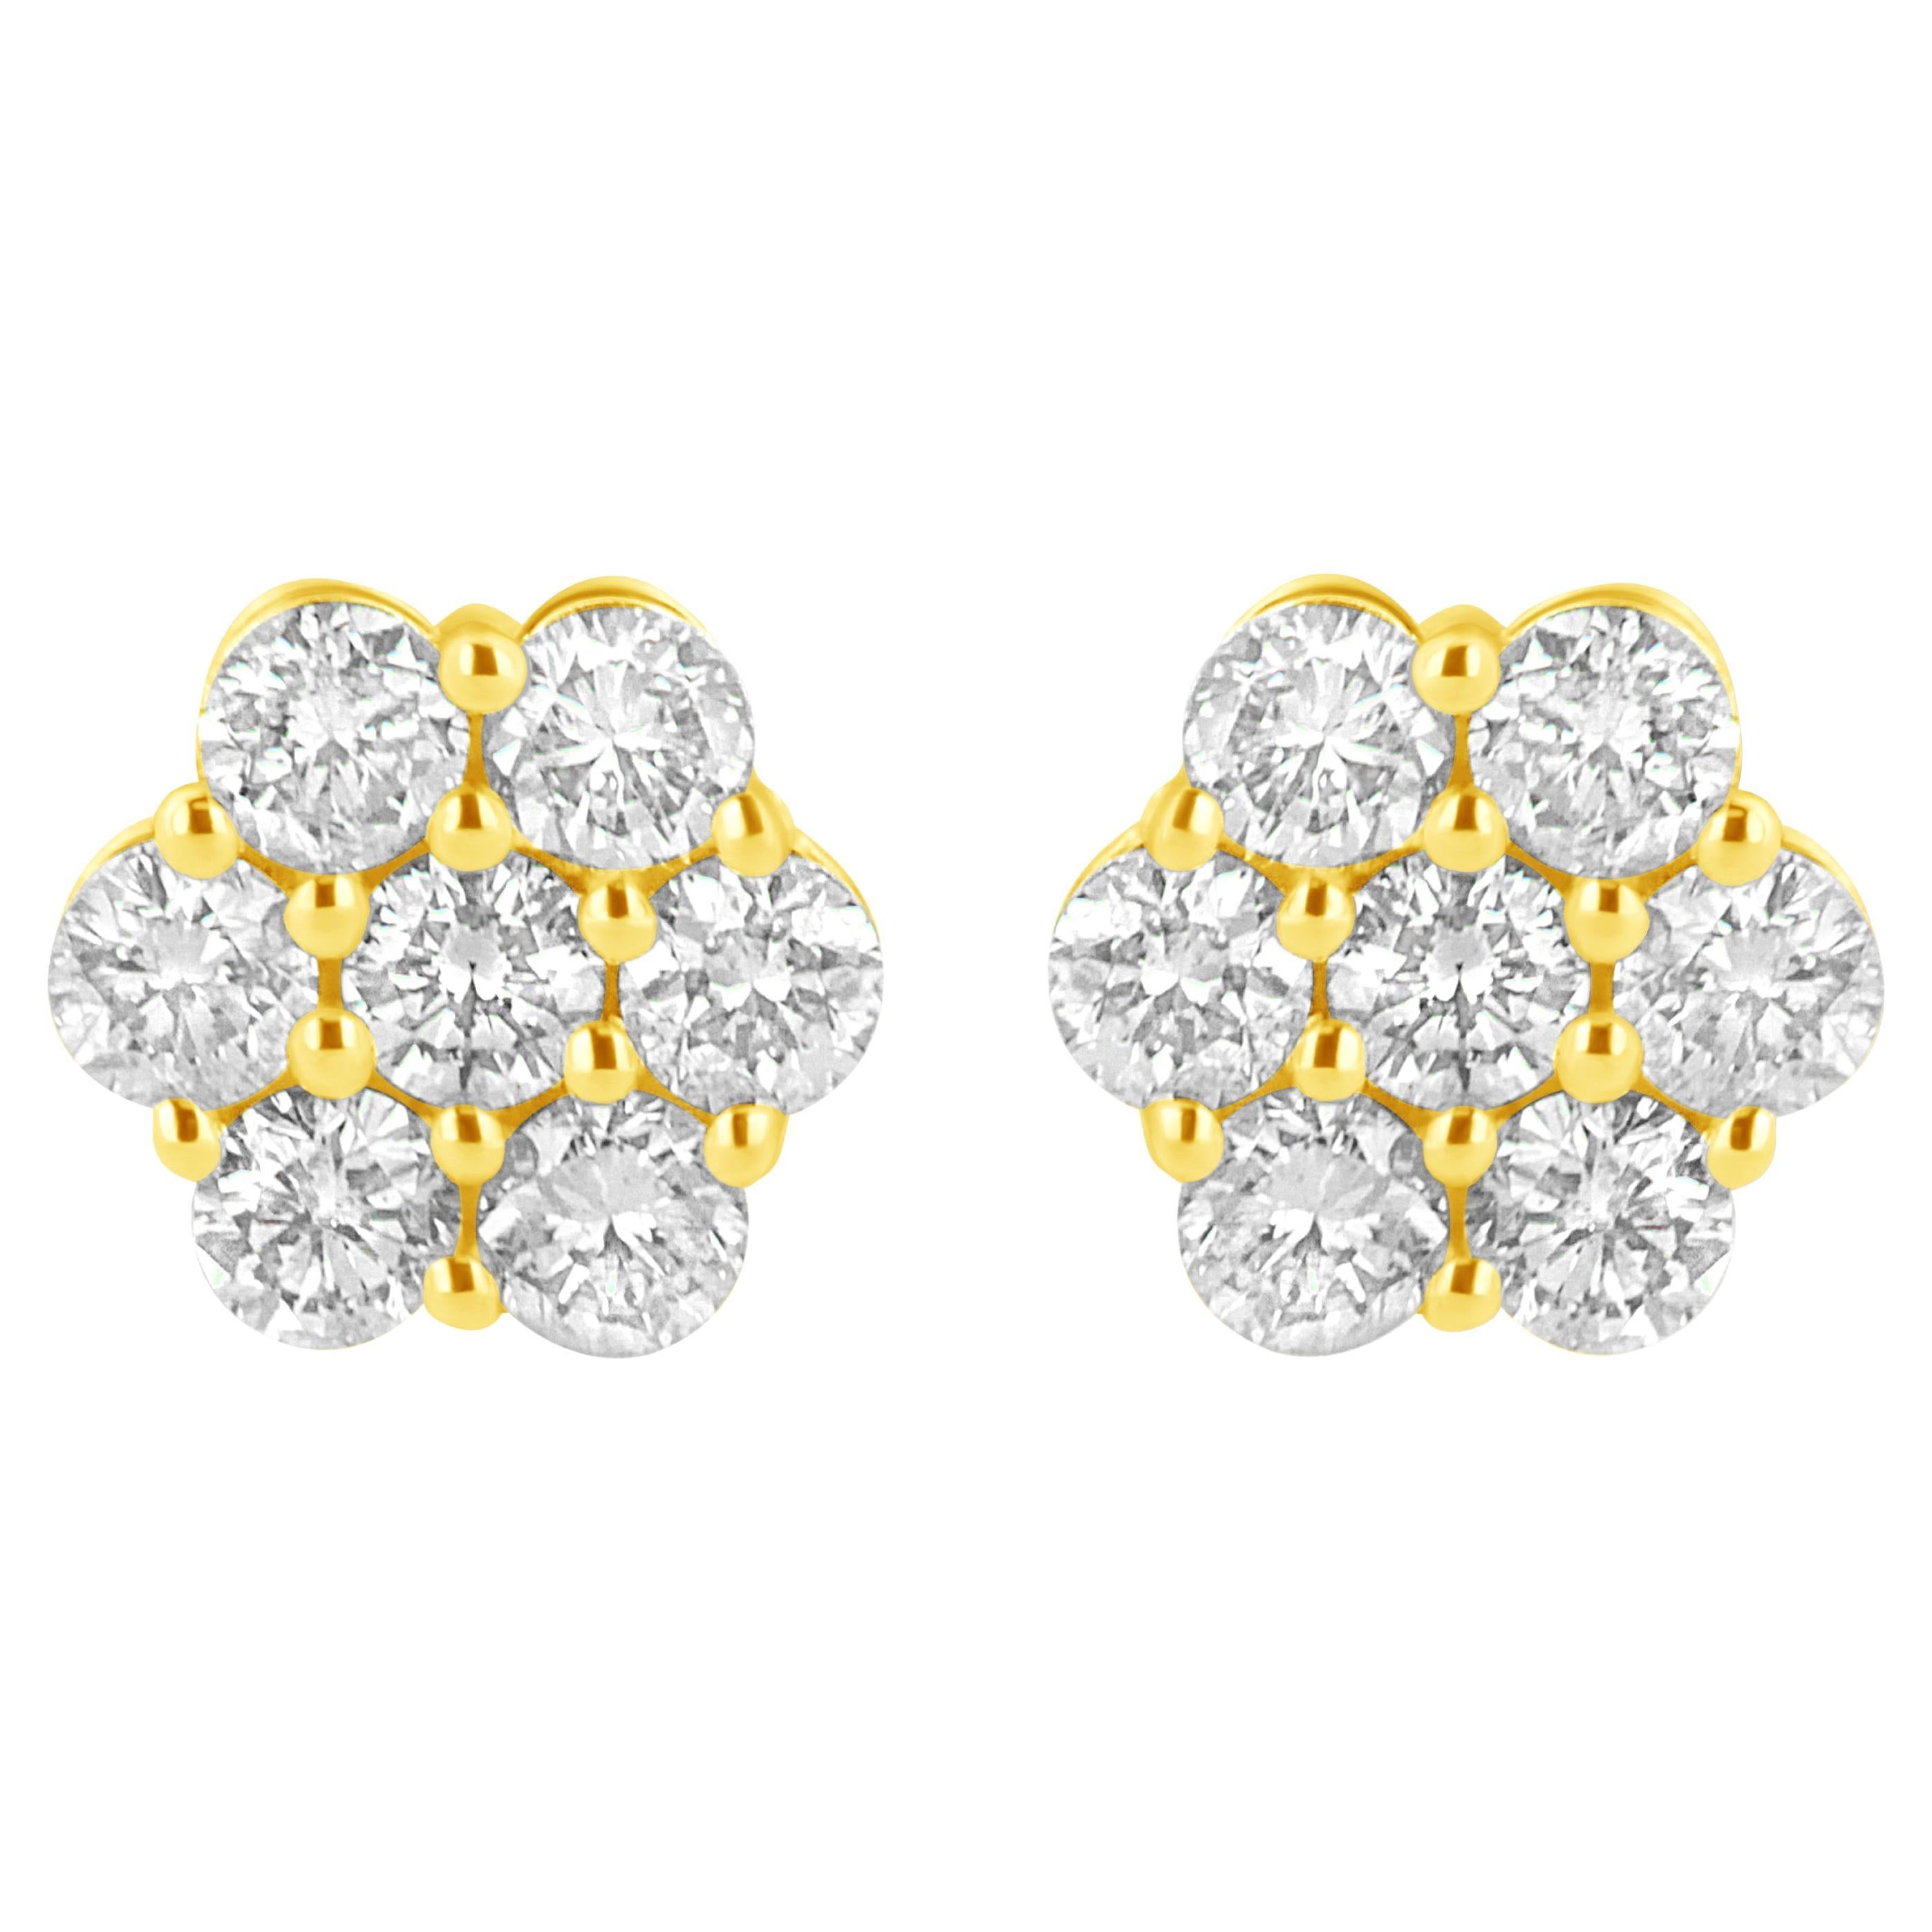 14K Yellow Gold 1.0 Carat Diamond Flower Earrings